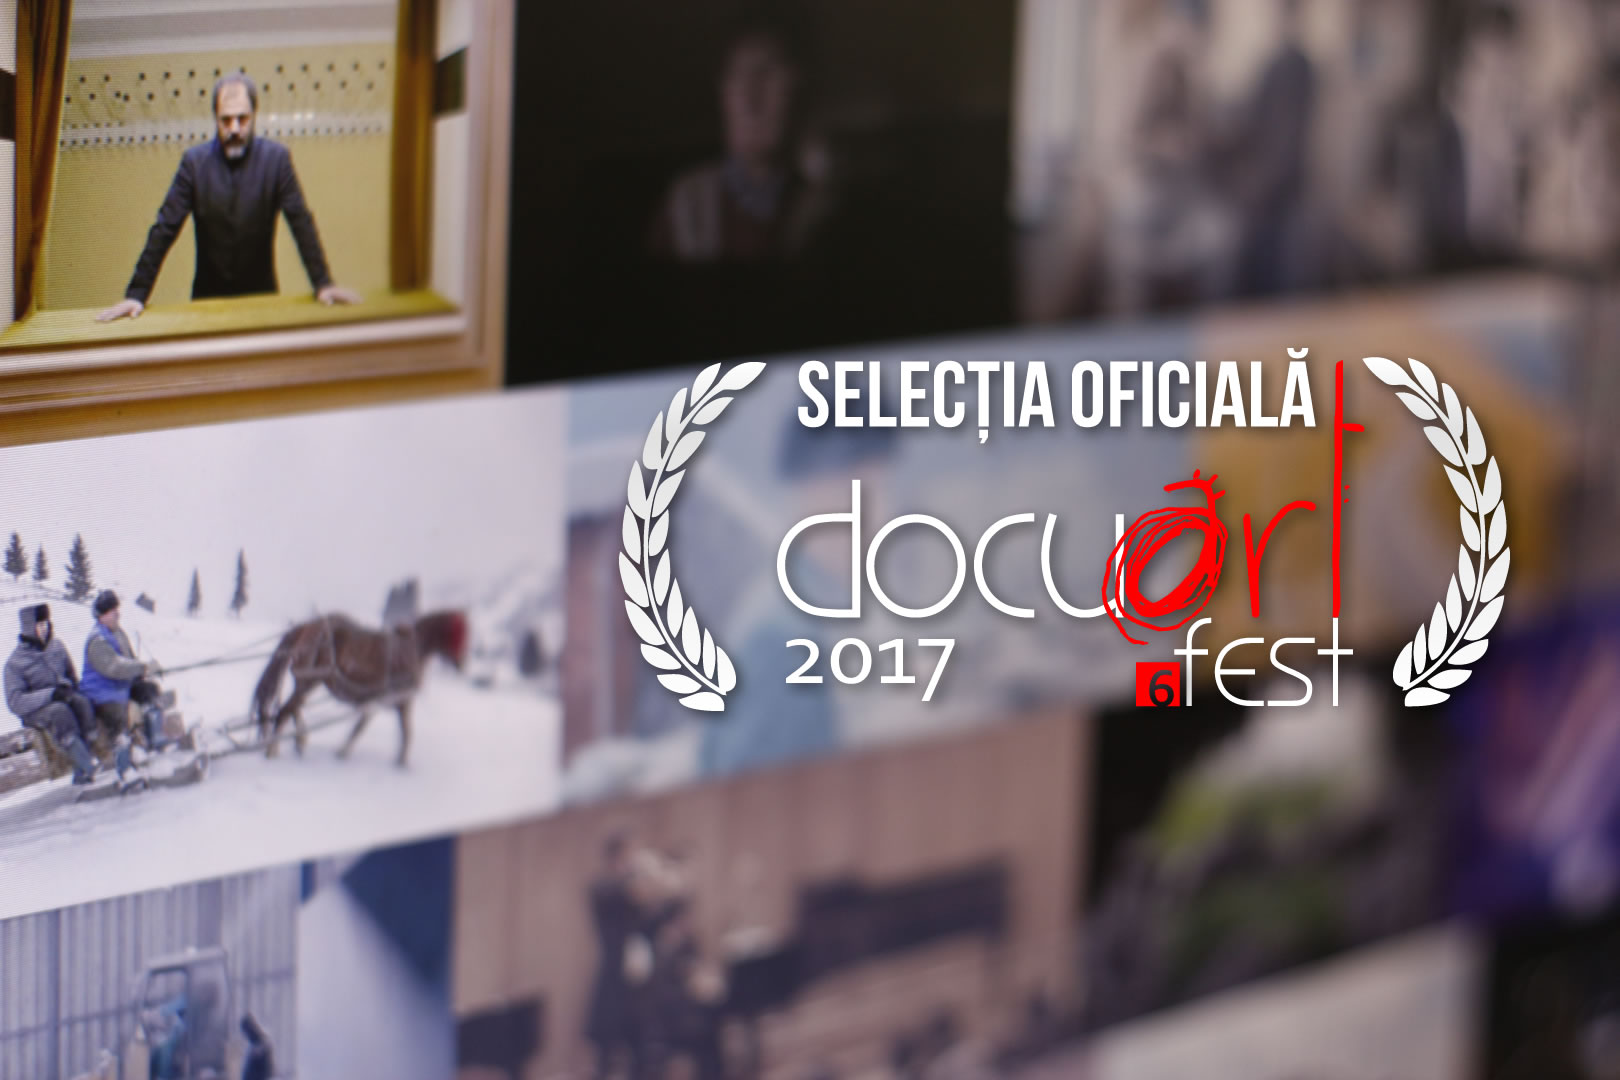 Filmele care se văd în competiție la București Docuart Fest 6